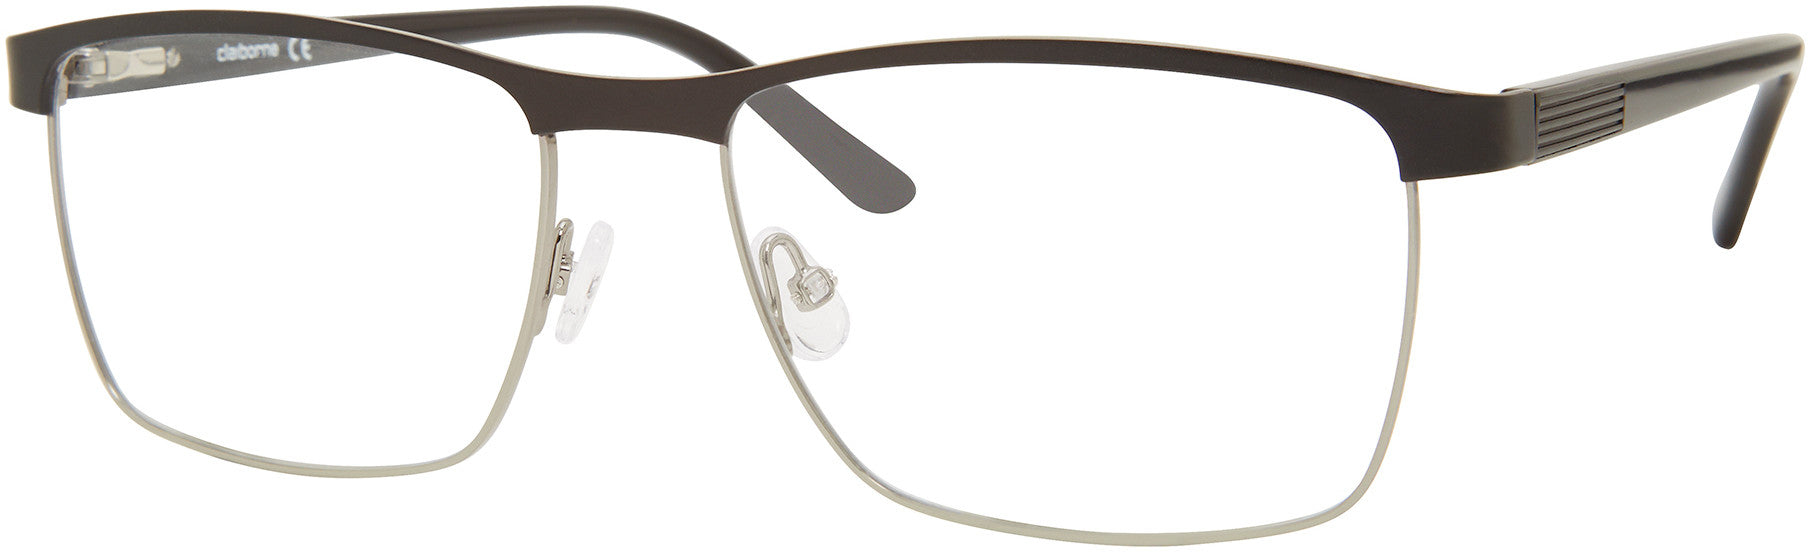  Claiborne 253 Rectangular Eyeglasses 0TI7-0TI7  Ruthenium Matte Black (00 Demo Lens)